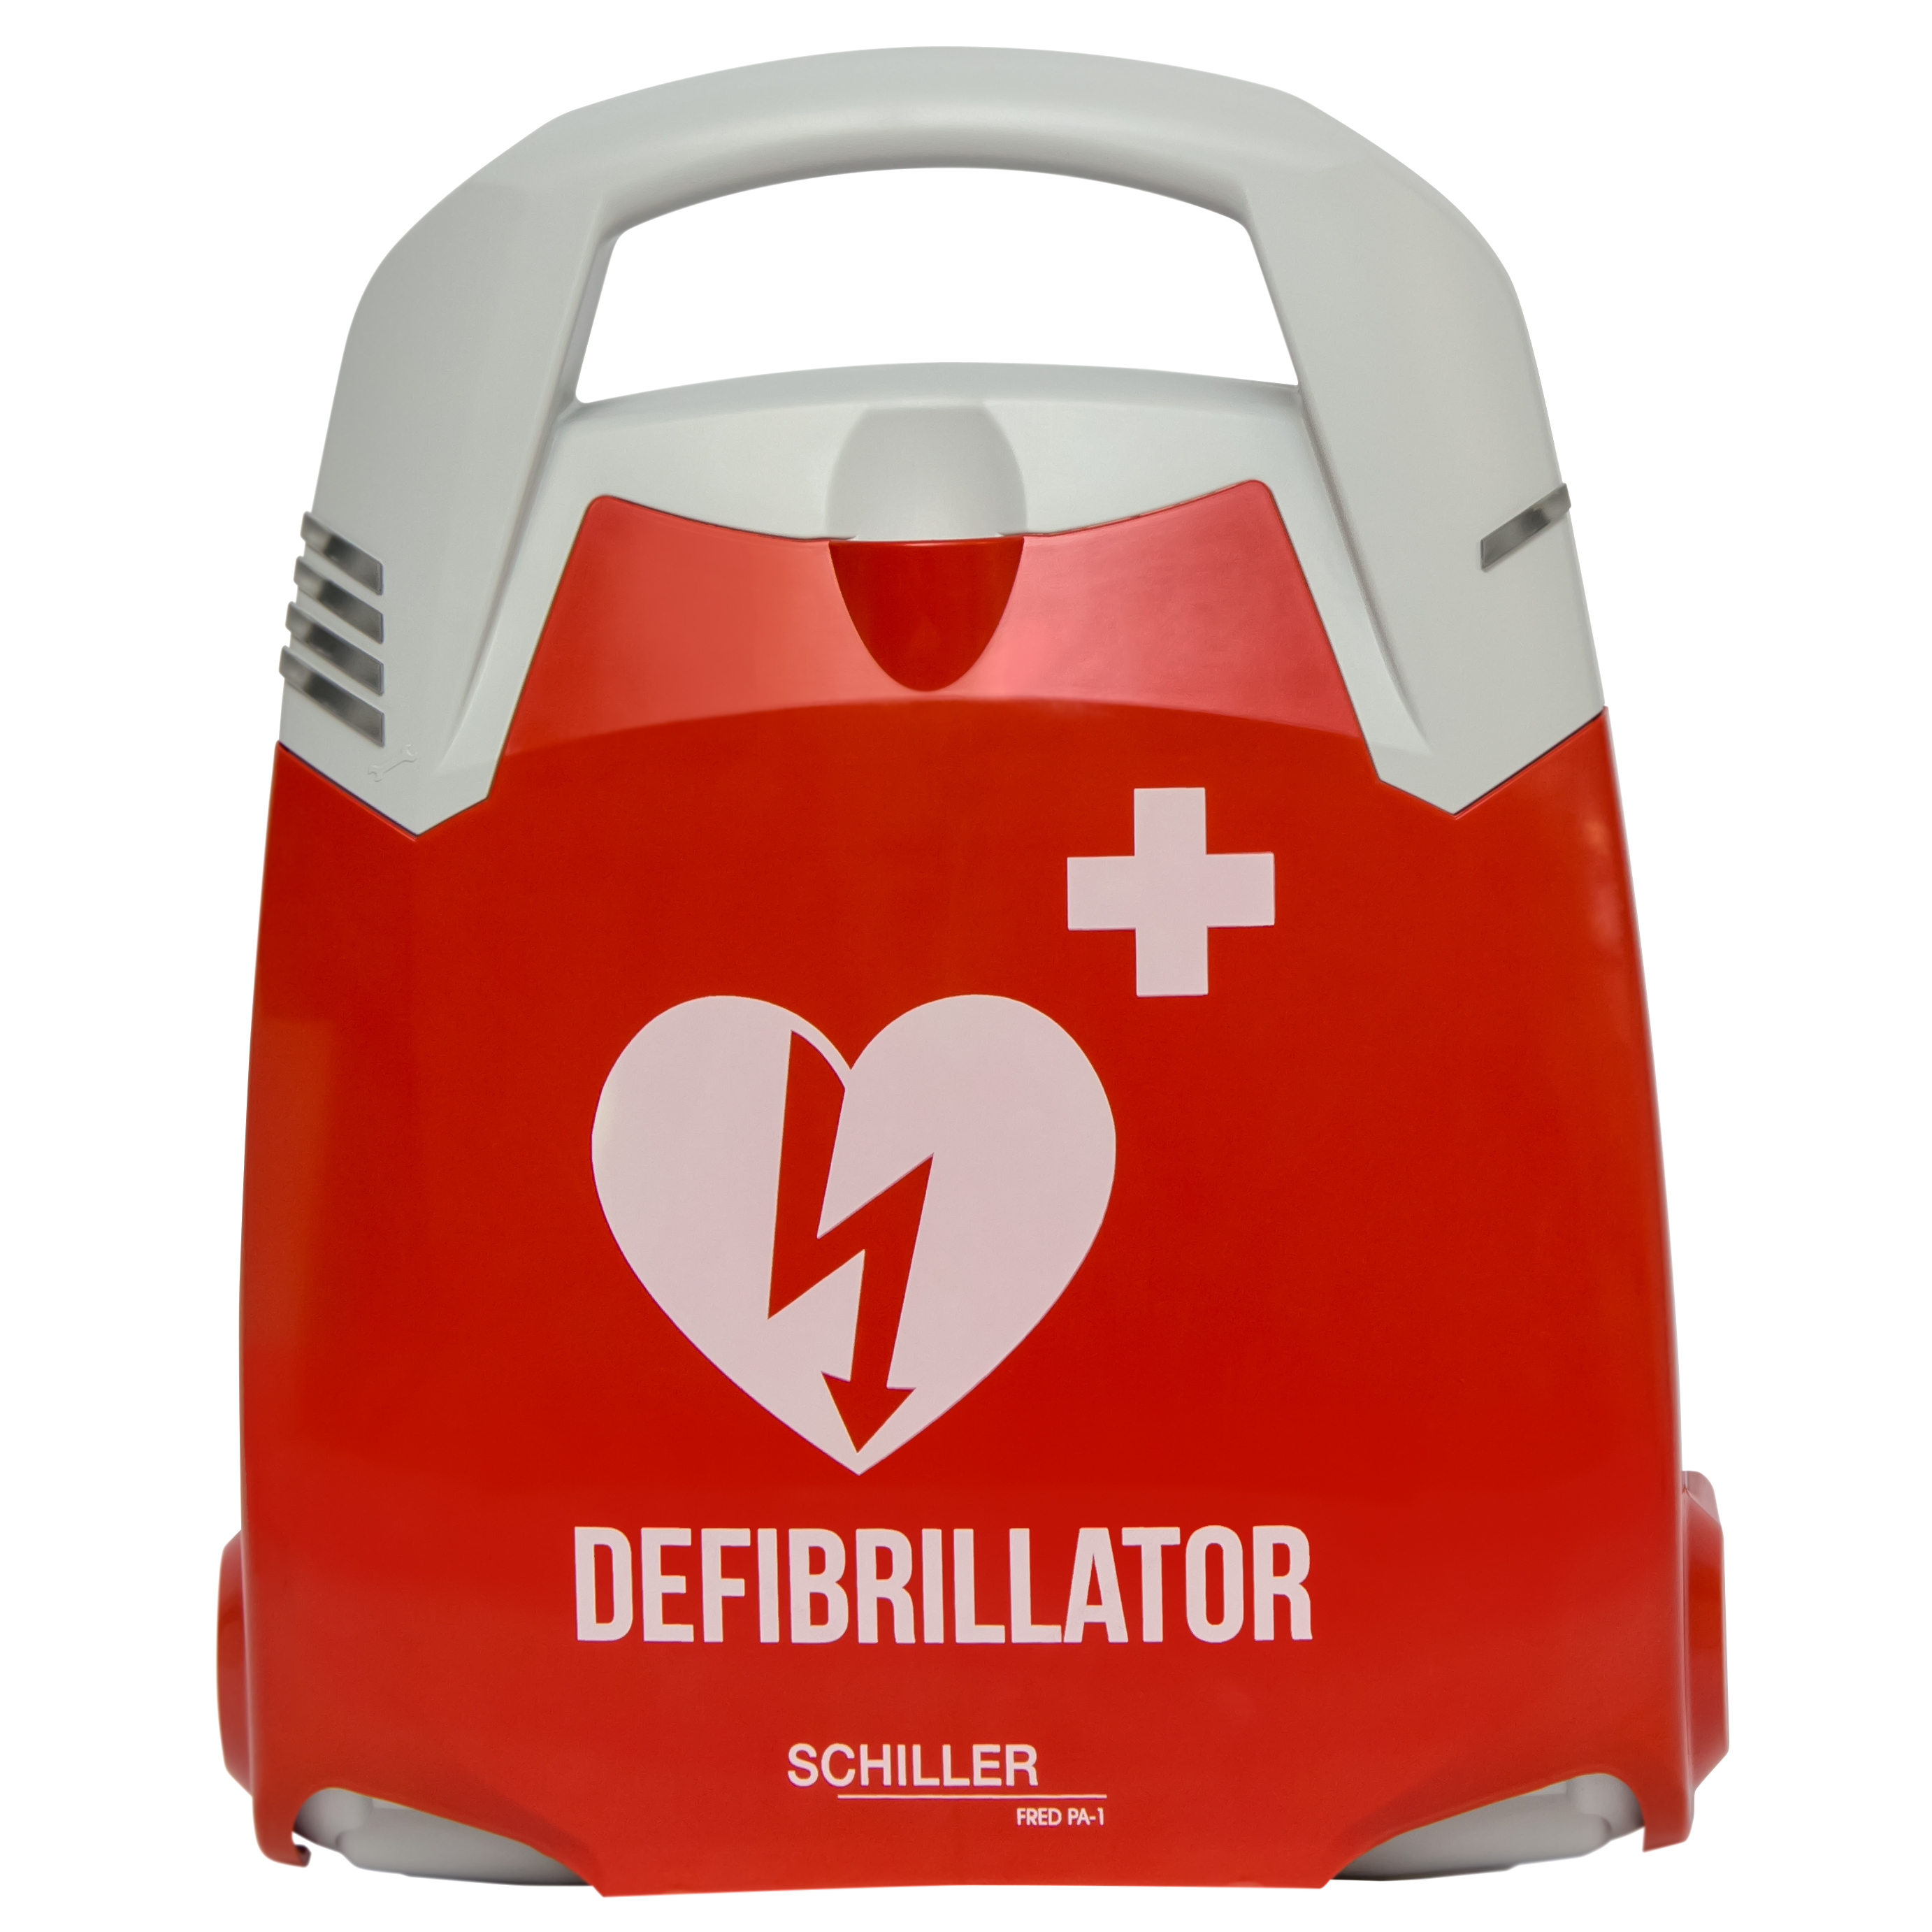 Fred PA-1 defibrillator